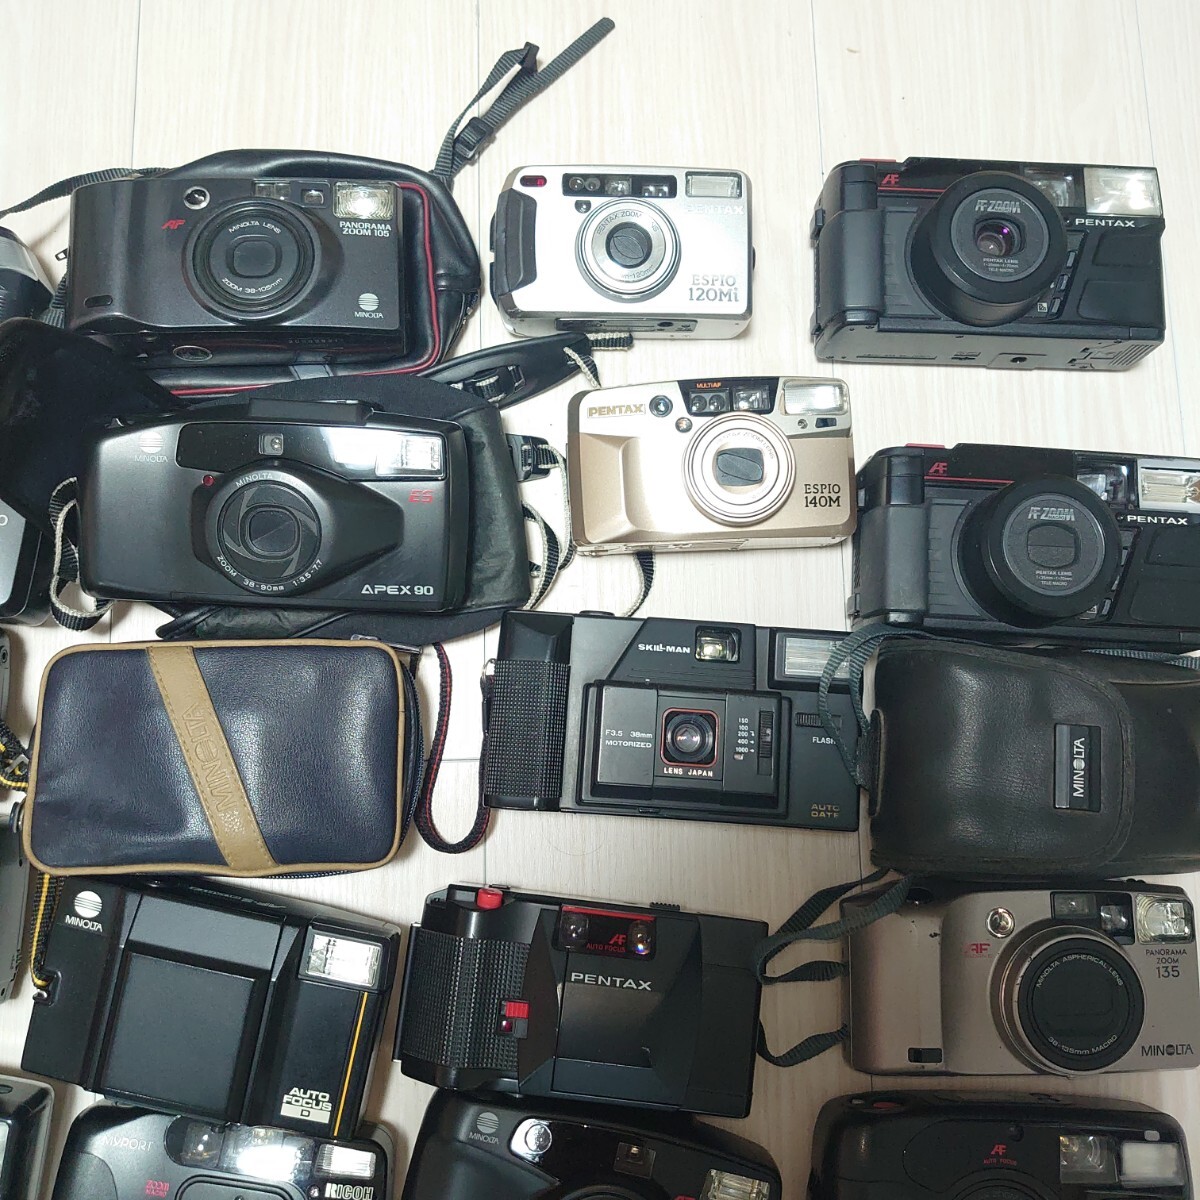 フィルムカメラ デジタルカメラ コンパクトカメラ ジャンク品 まとめ売り まとめて 大量セット 30台 引越しのためカメラ用品色々出品中_画像4